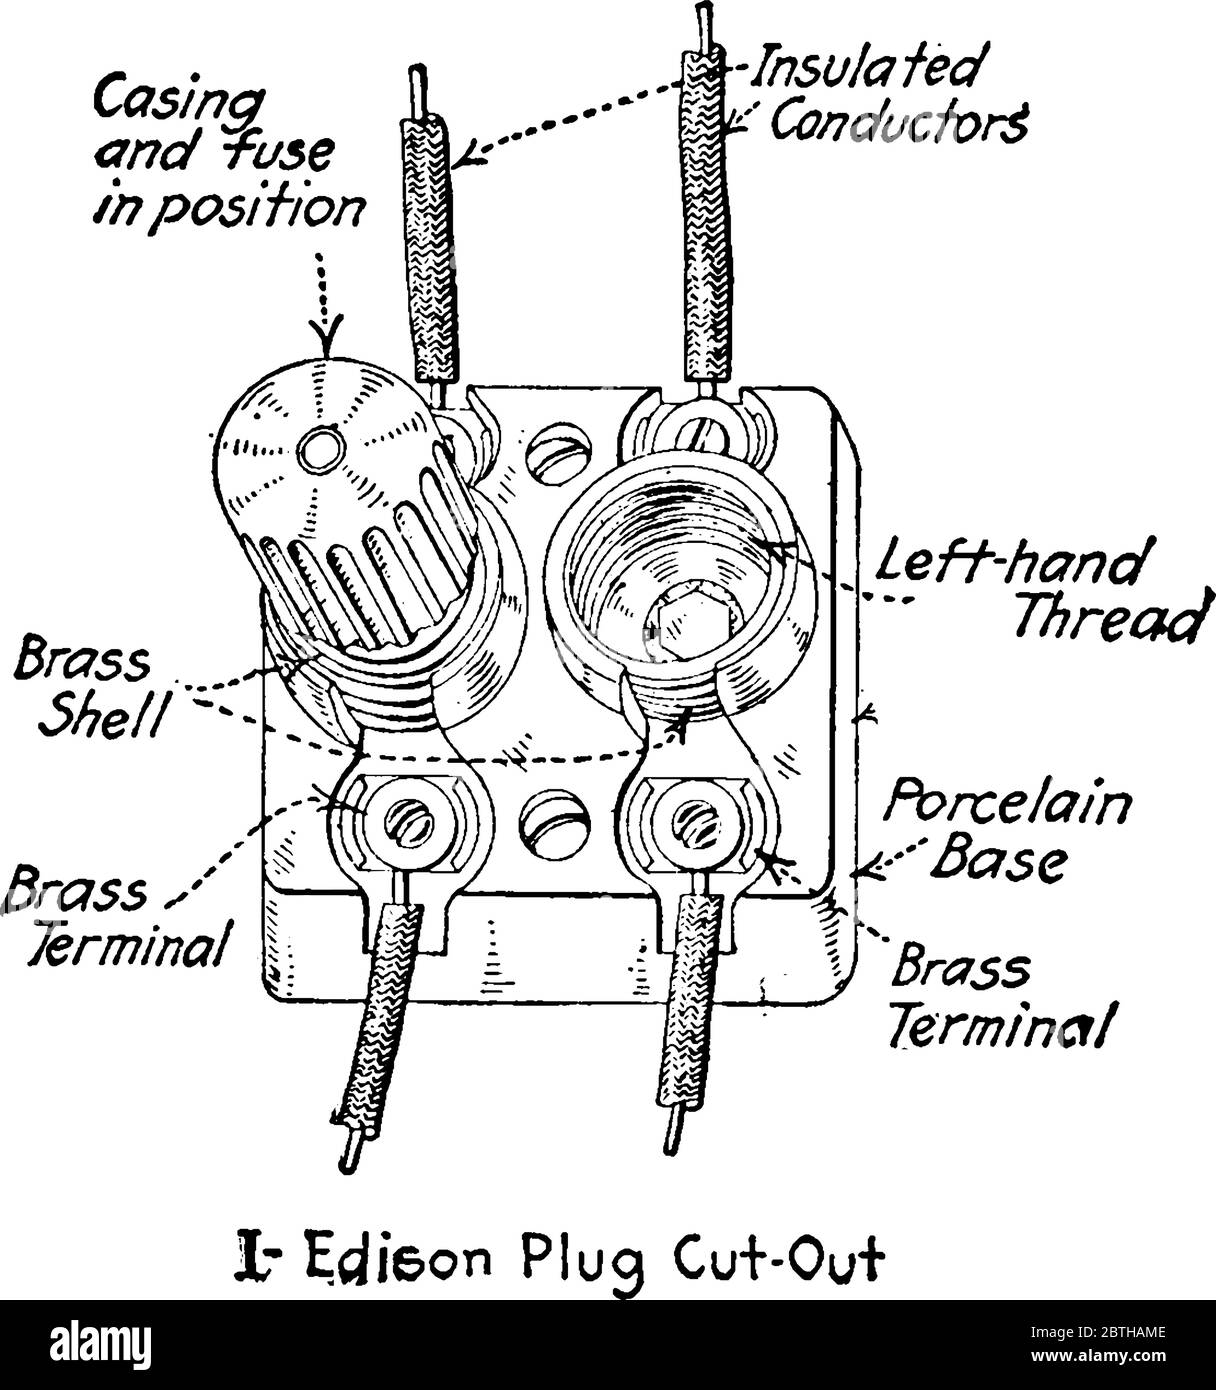 Ein experimenteller Aufbau, zur Veranschaulichung, Edison-Sicherungsstecker ausgeschnitten, in Schaltanlagen, Vintage-Strichzeichnung oder Gravur Illustration verwendet. Stock Vektor